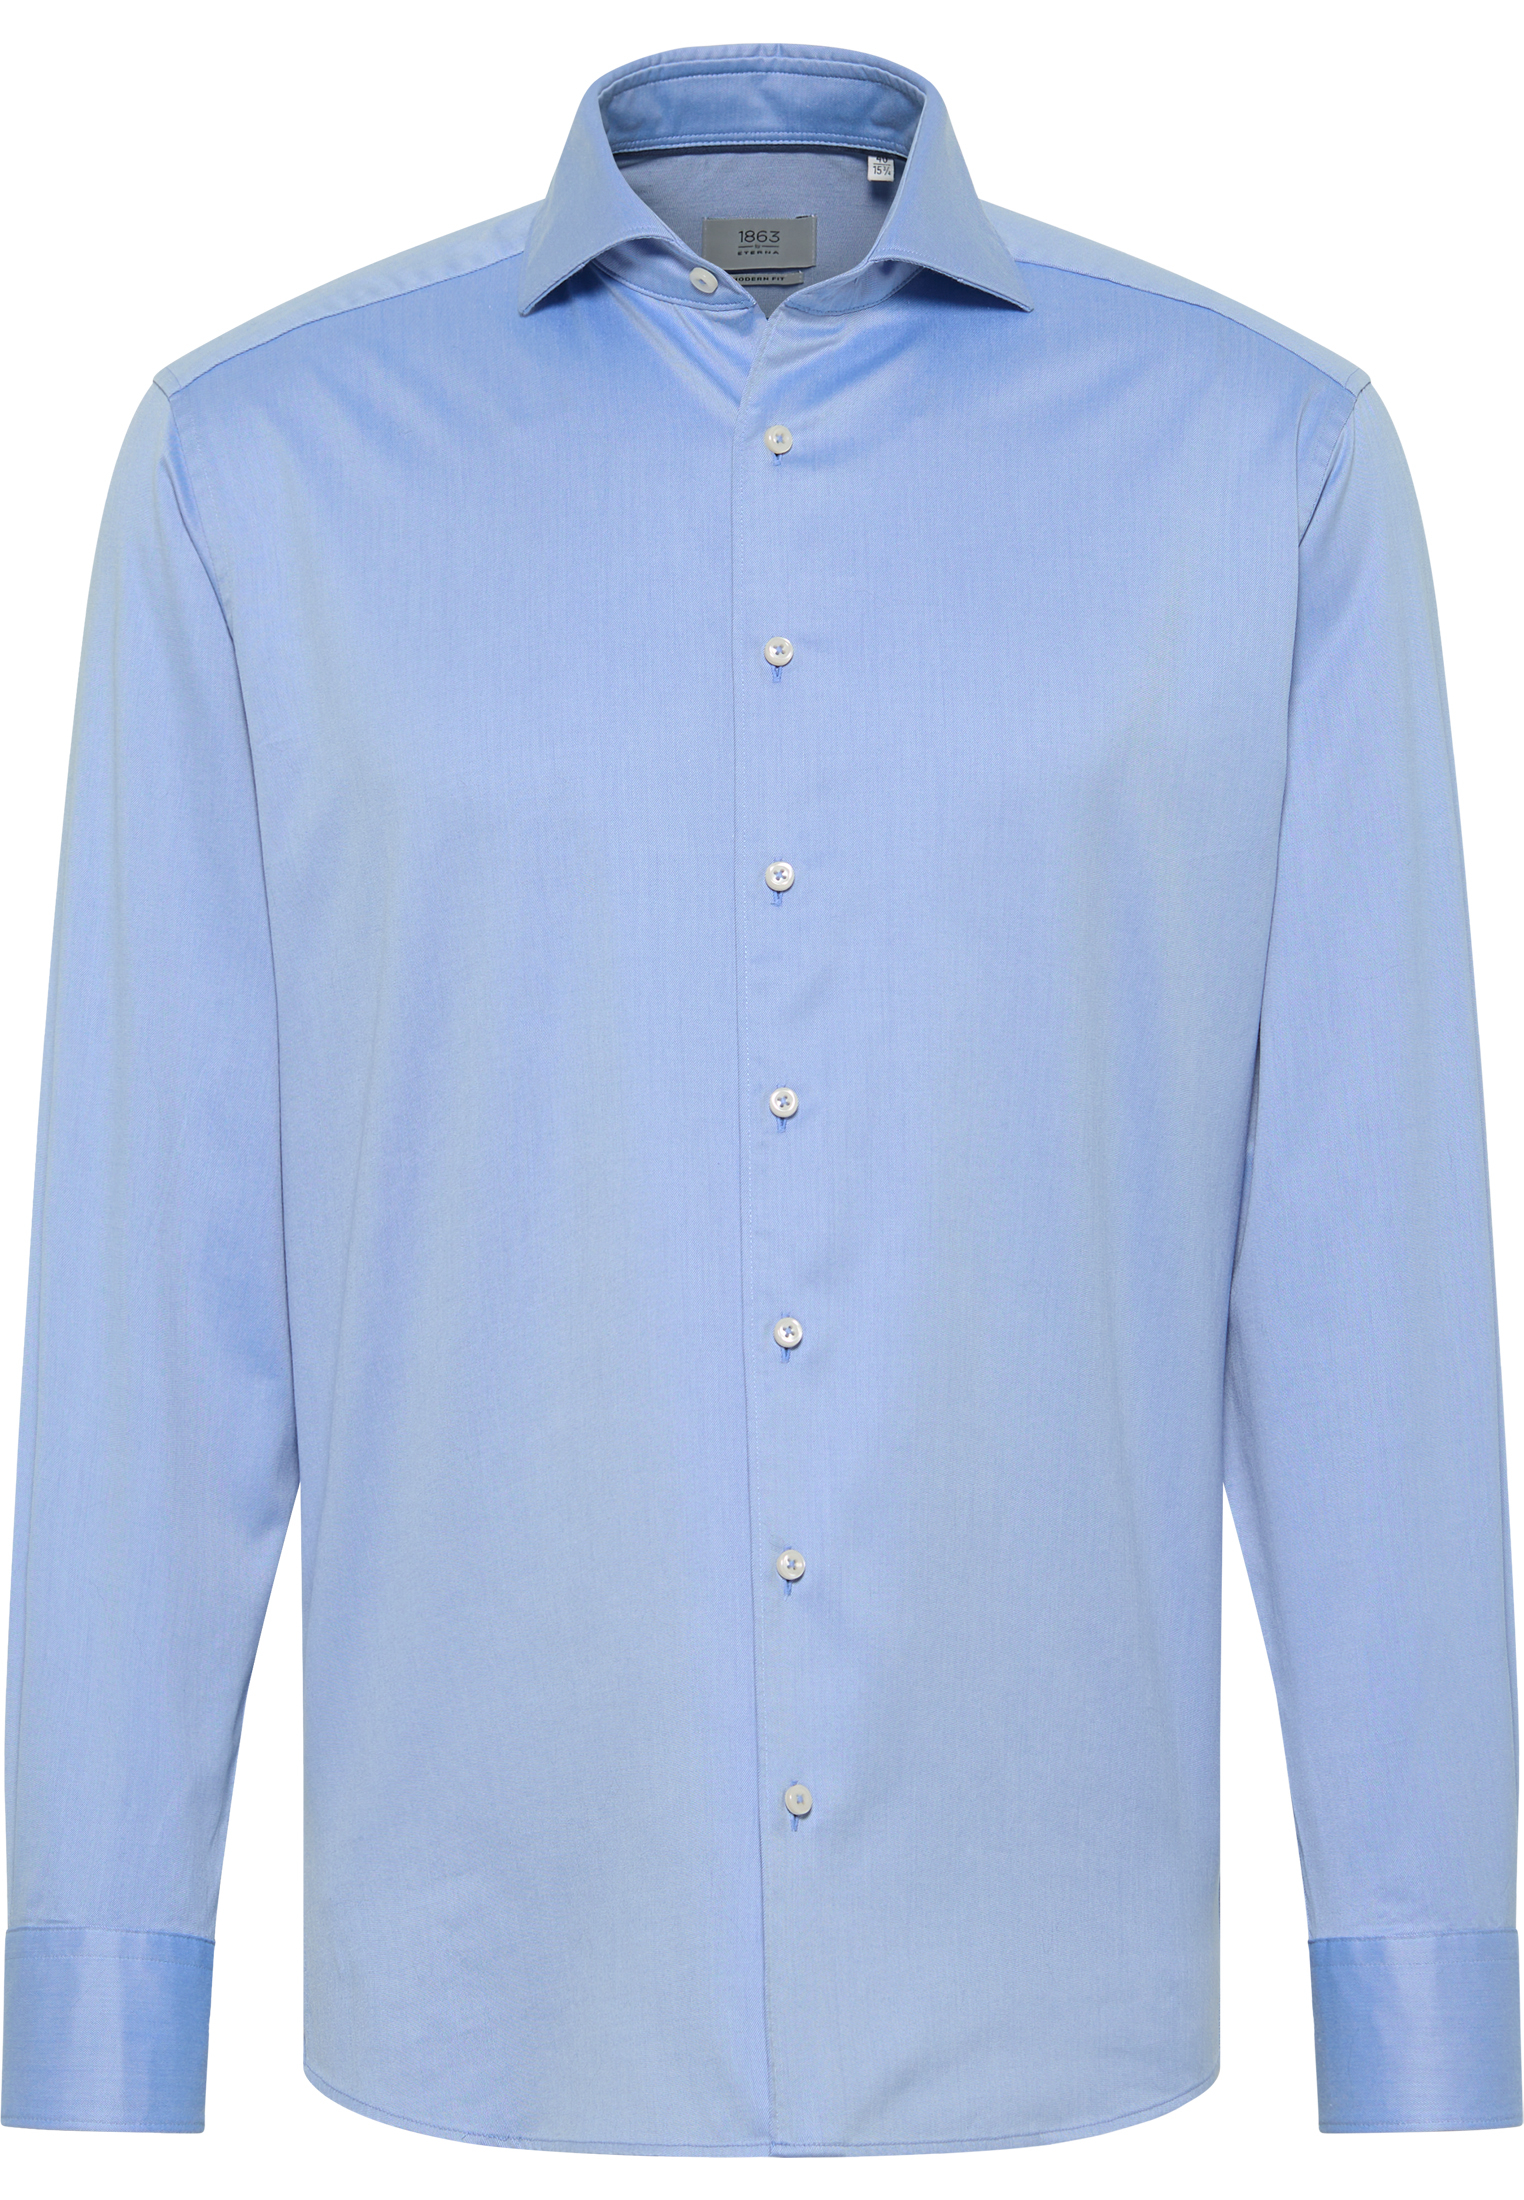 MODERN FIT Soft Luxury Shirt in middenblauw vlakte